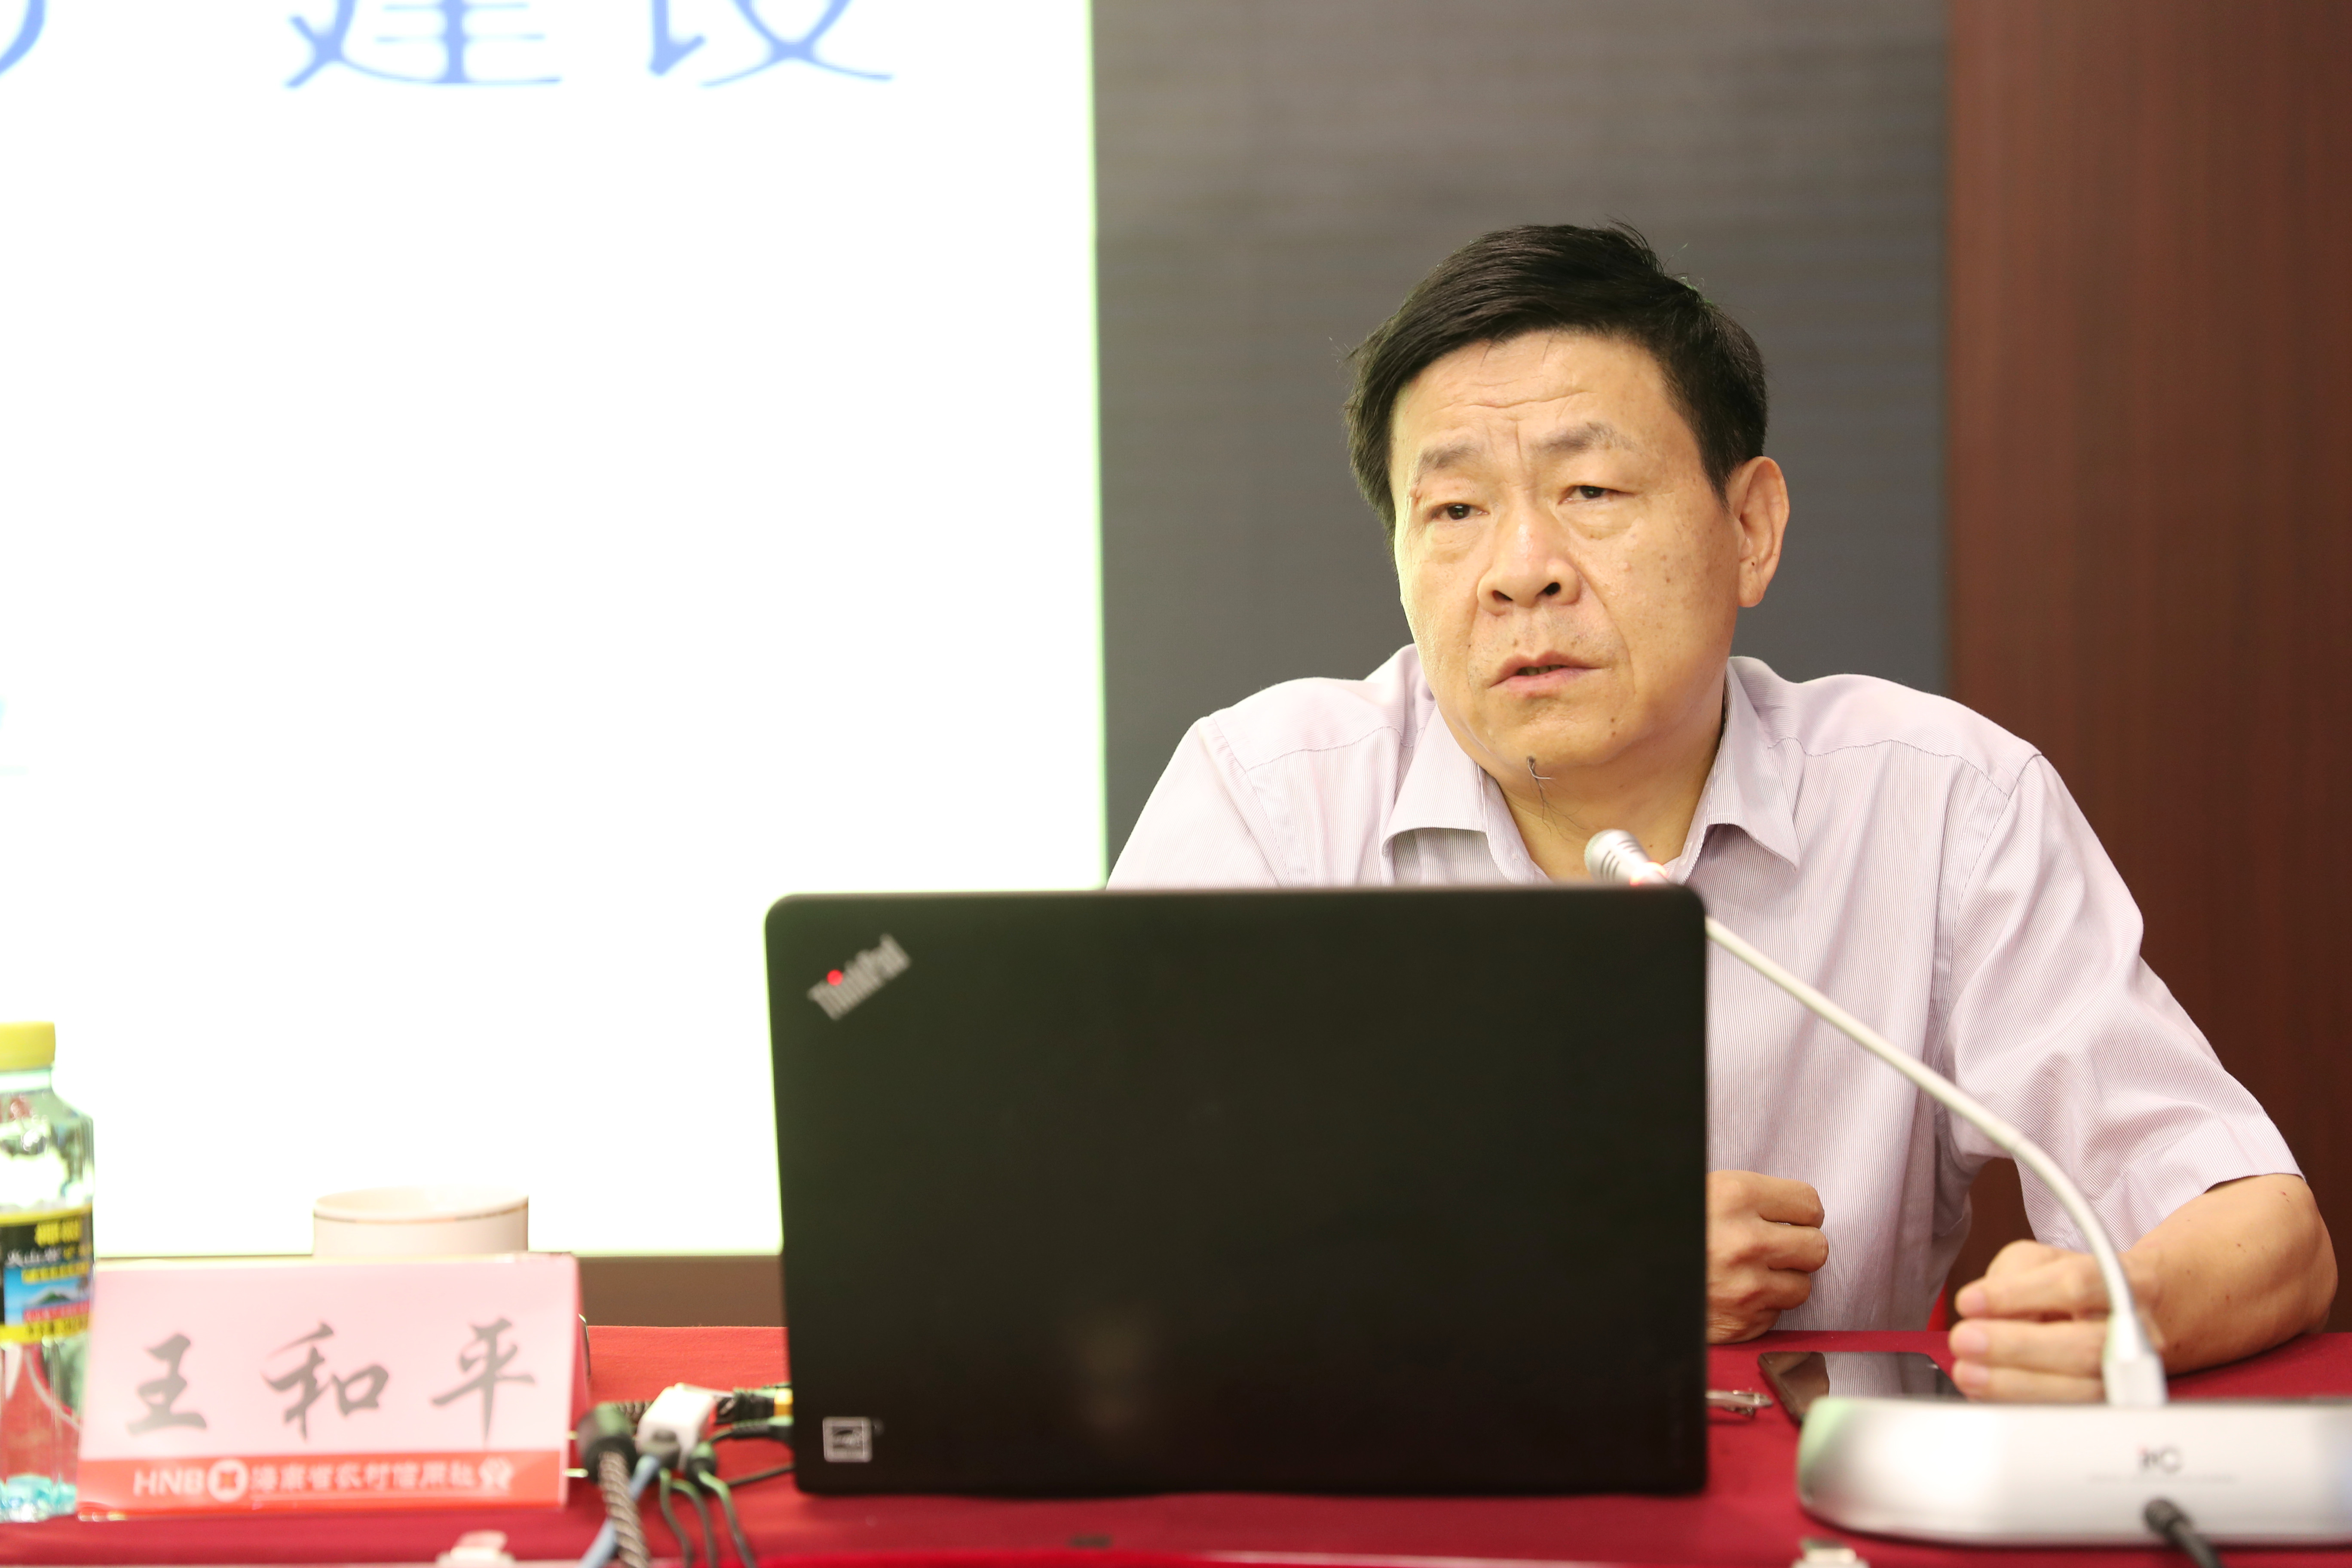 省委党校常务副校长王和平来省农信社做专题辅导报告